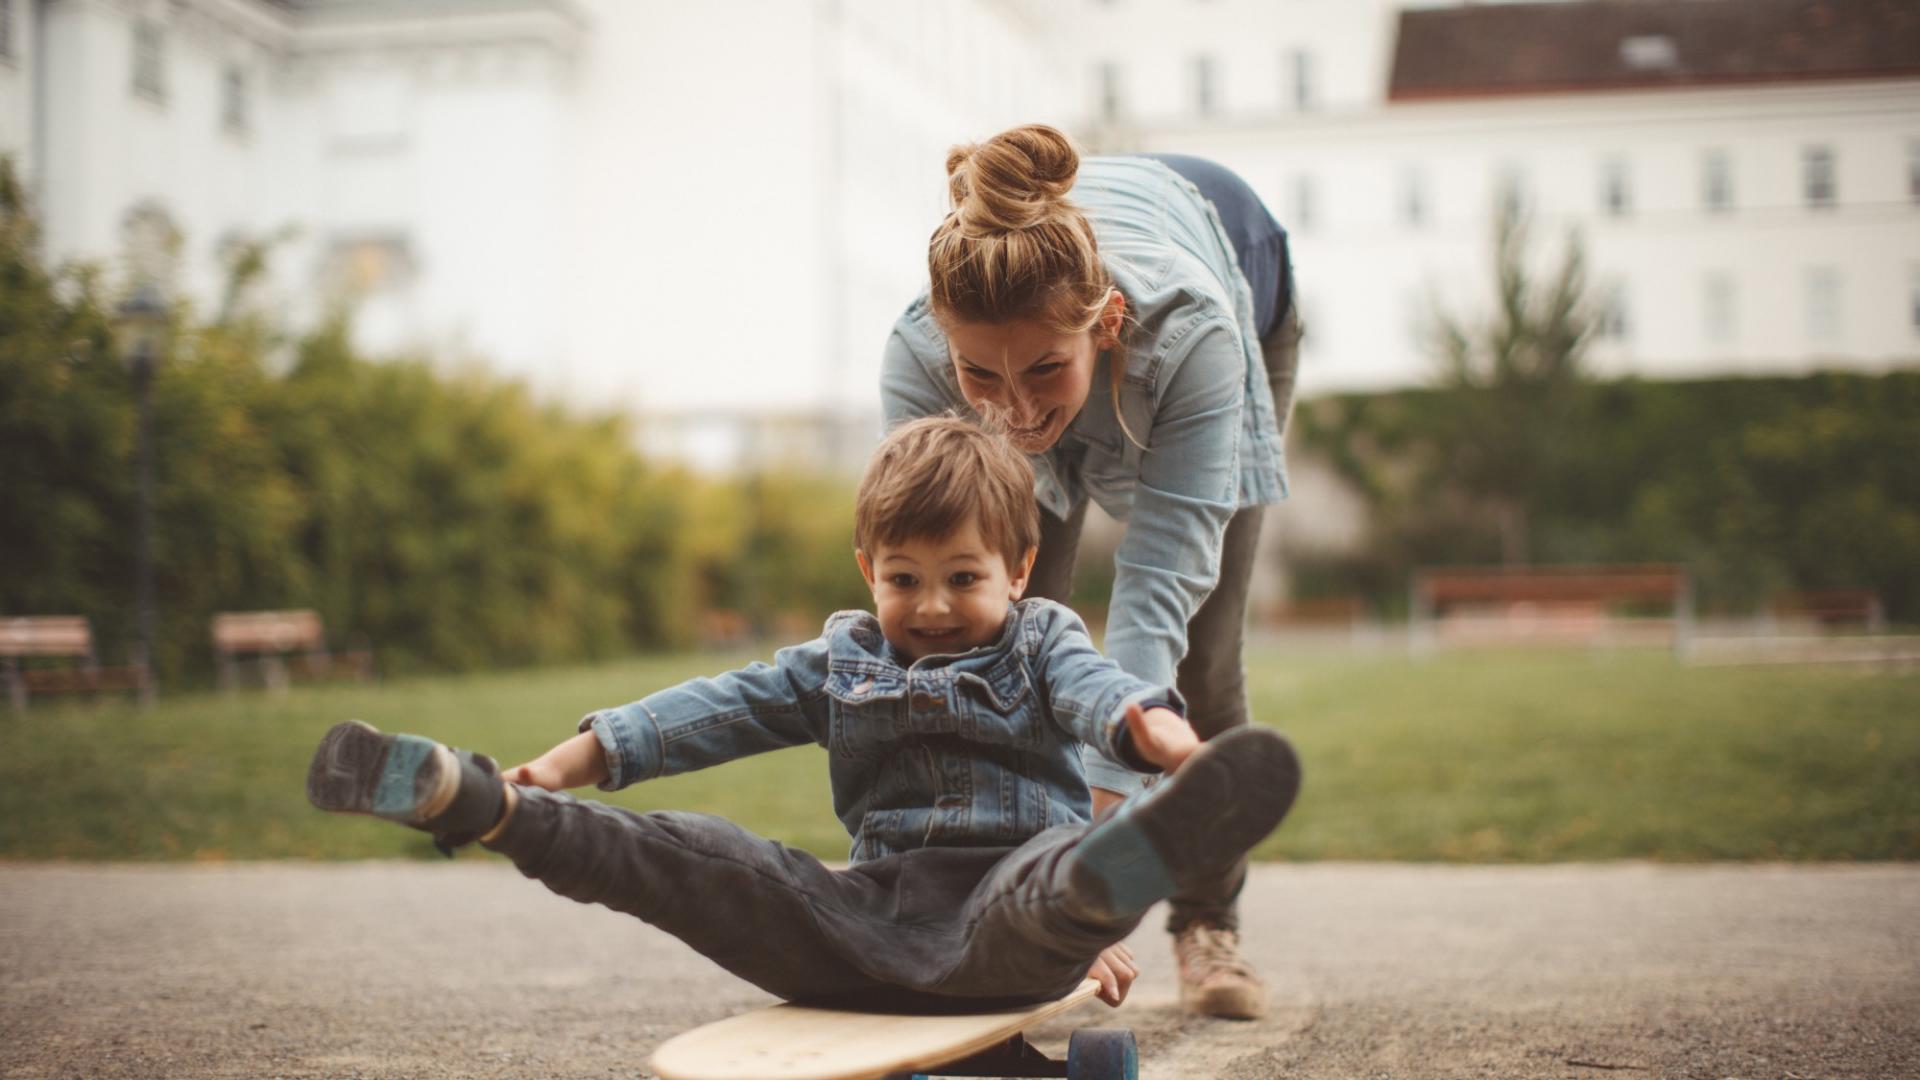 Eine Frau spielt mit einem Kind, das auf einem Skateboard sitzt, und schiebt es an.